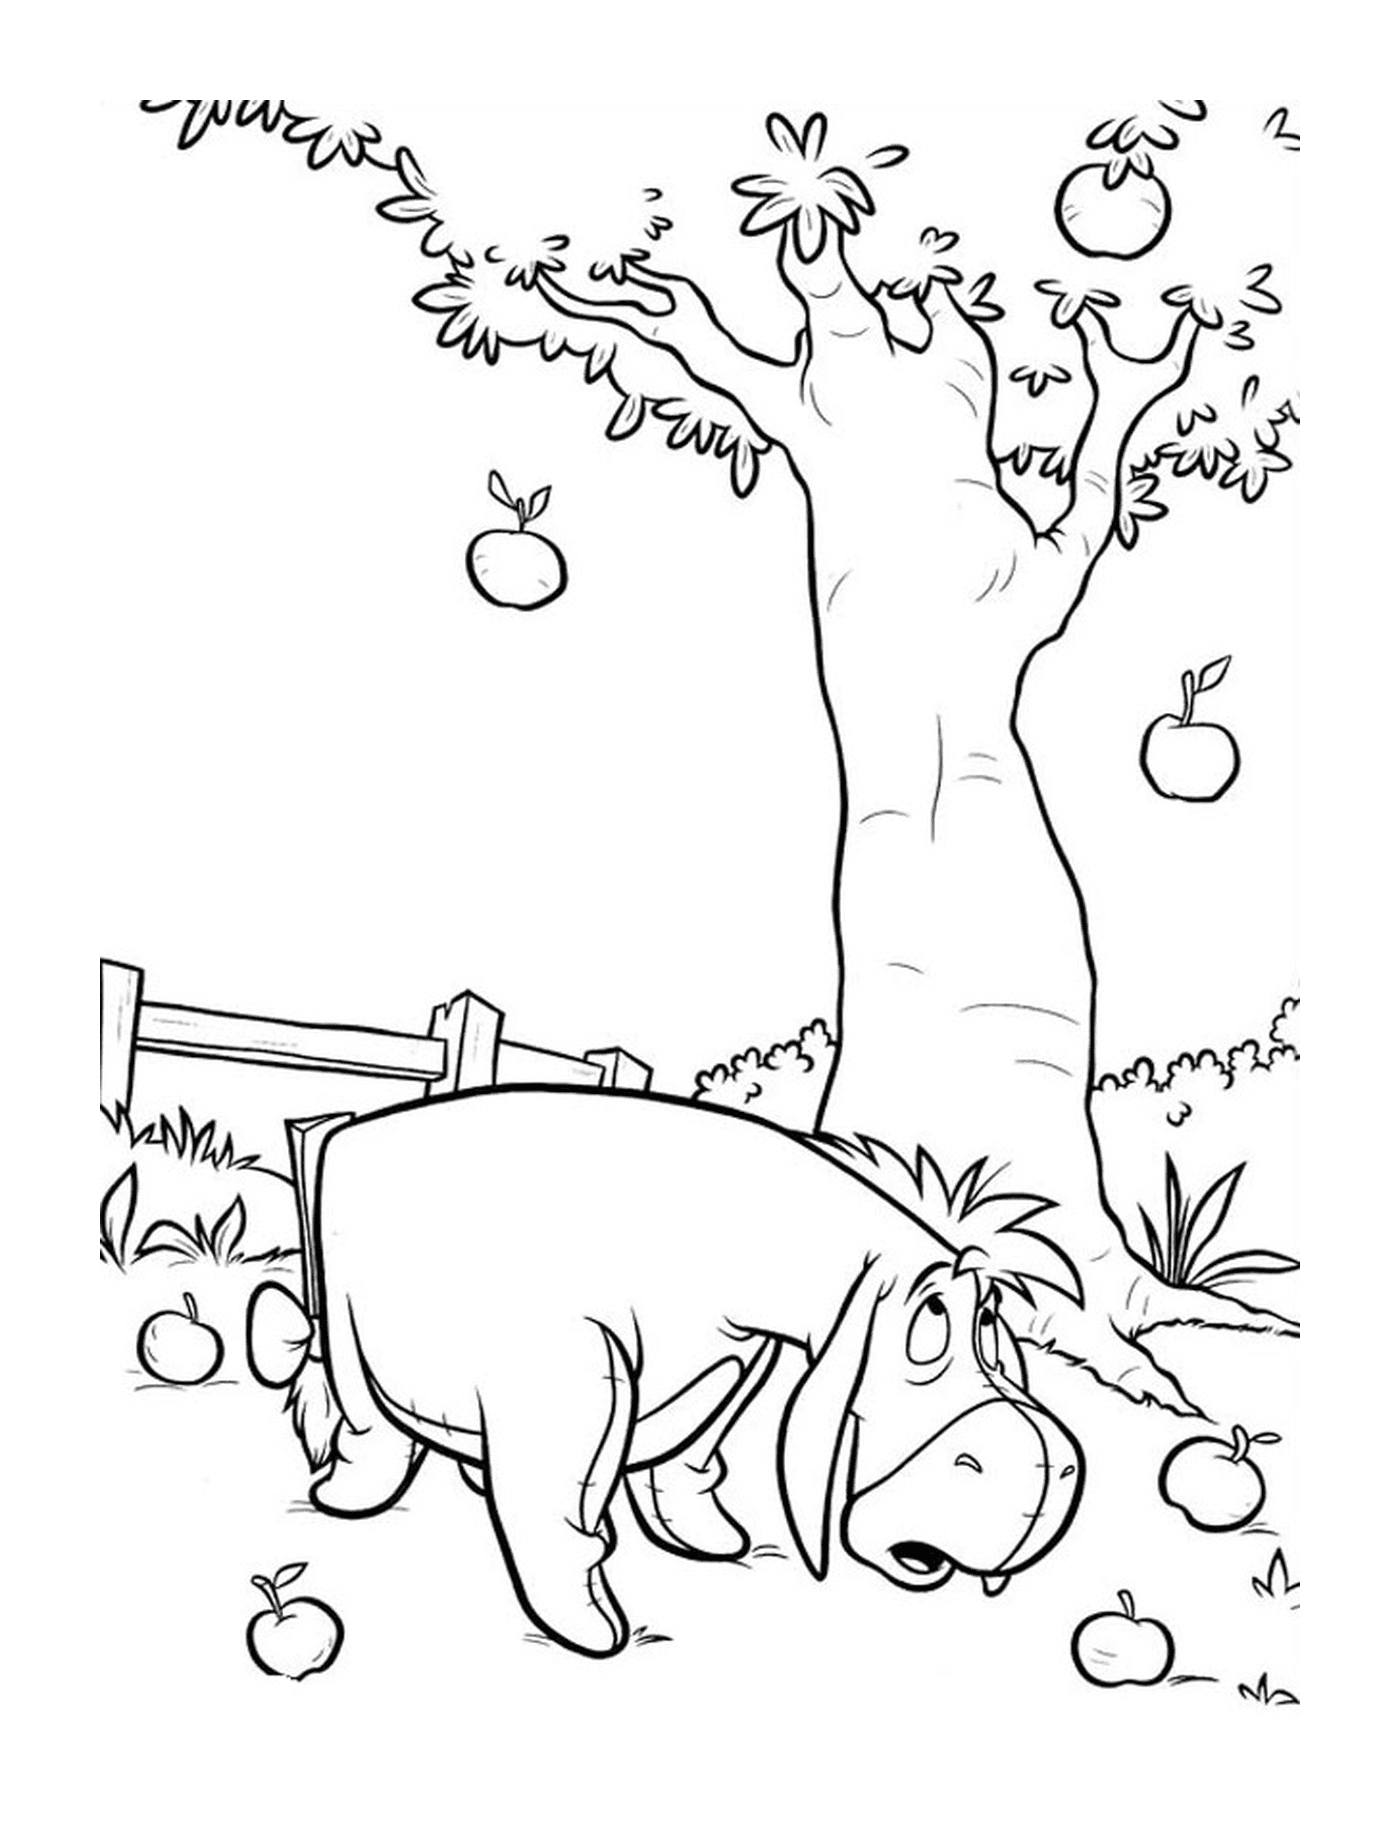  Un hipopótamo de pie junto a un manzano 